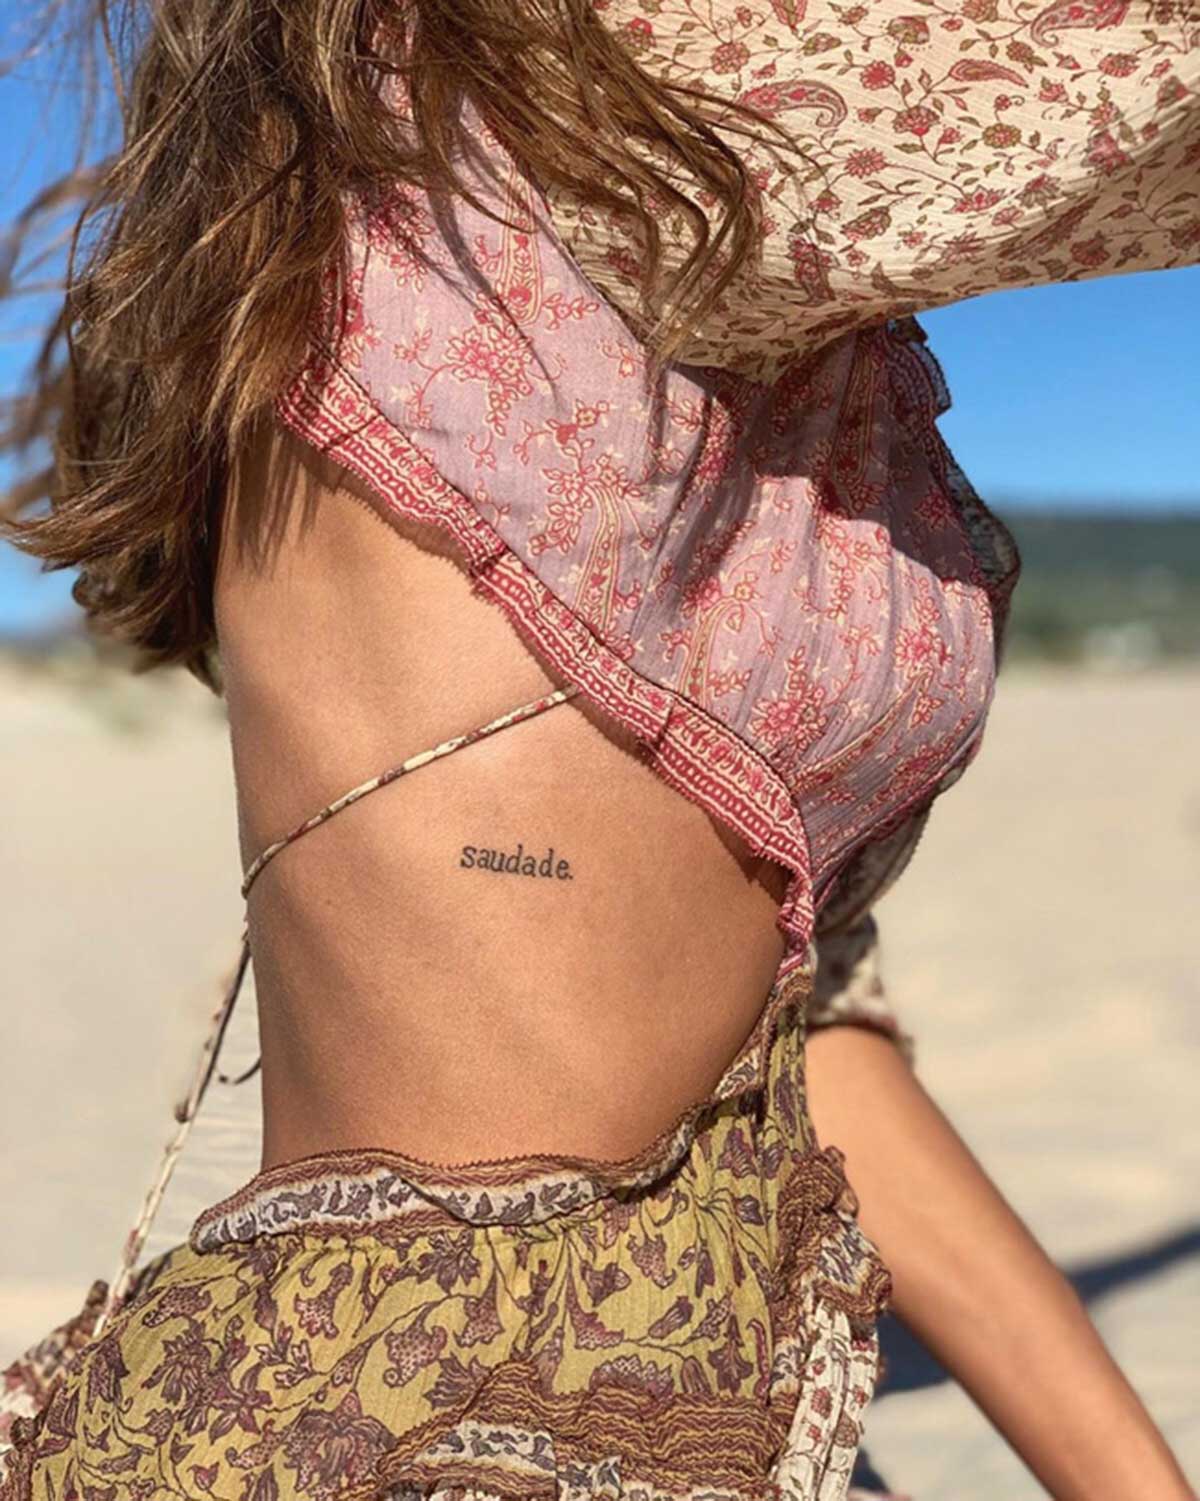 El nuevo tatuaje de Vicky Martín Berrocal que ha copiado a Sara Carbonero